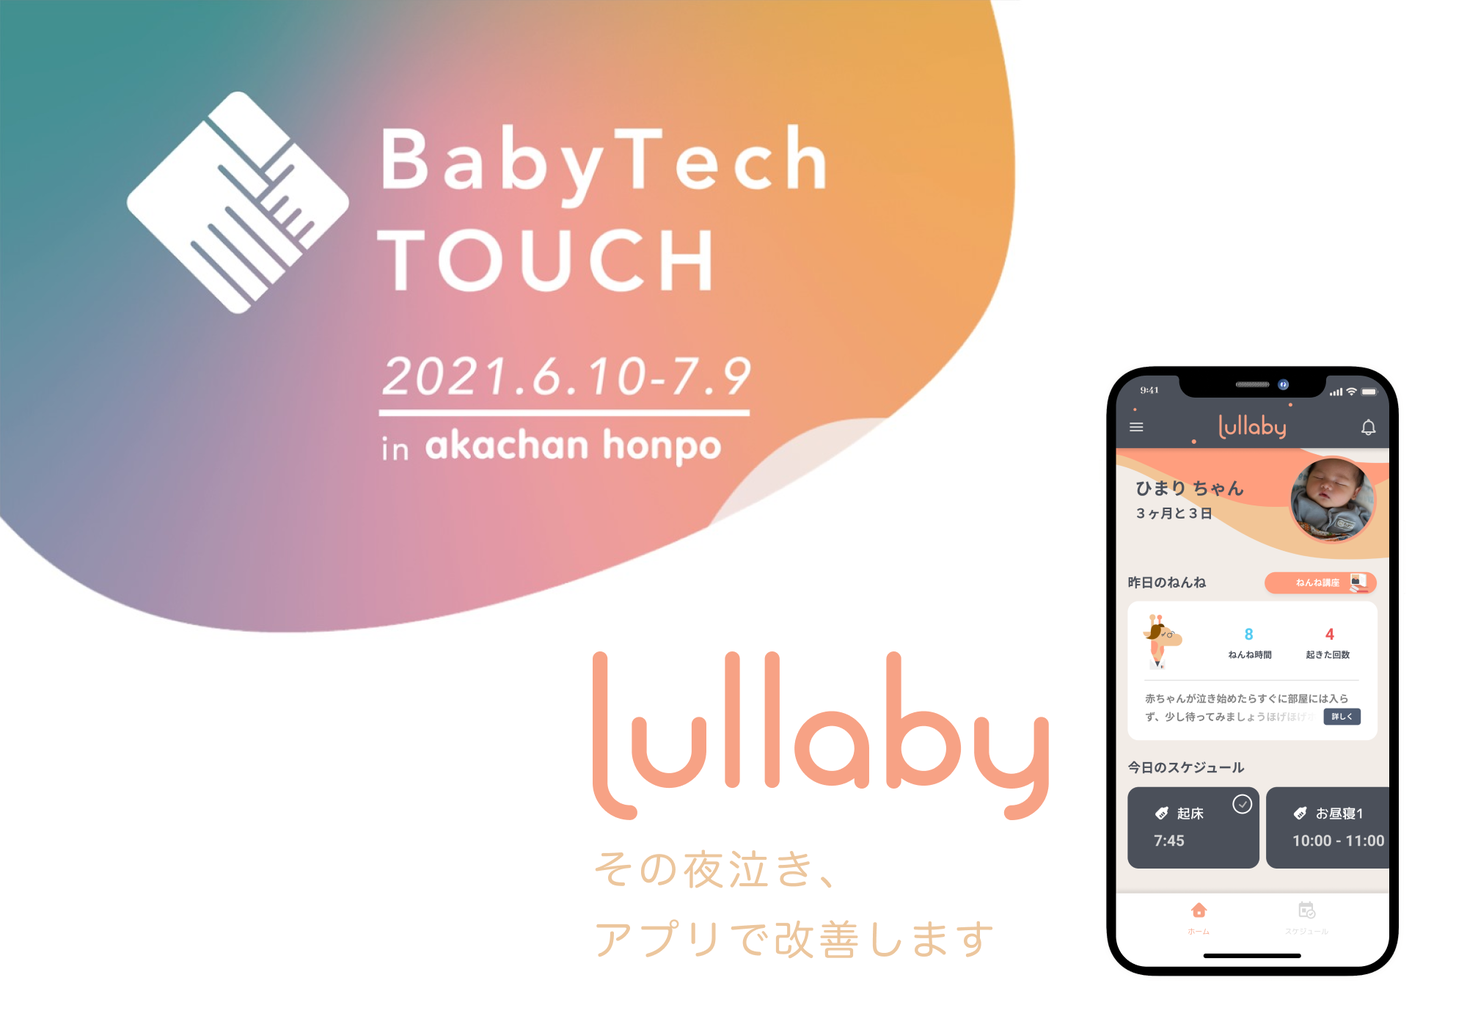 乳幼児の夜泣き改善 寝かしつけサポートアプリ Lullaby が アカチャンホンポで開催のベビーテック体験ショールーミングイベント Babytech Touch に出展 Moon Creative Lab Inc のプレスリリース